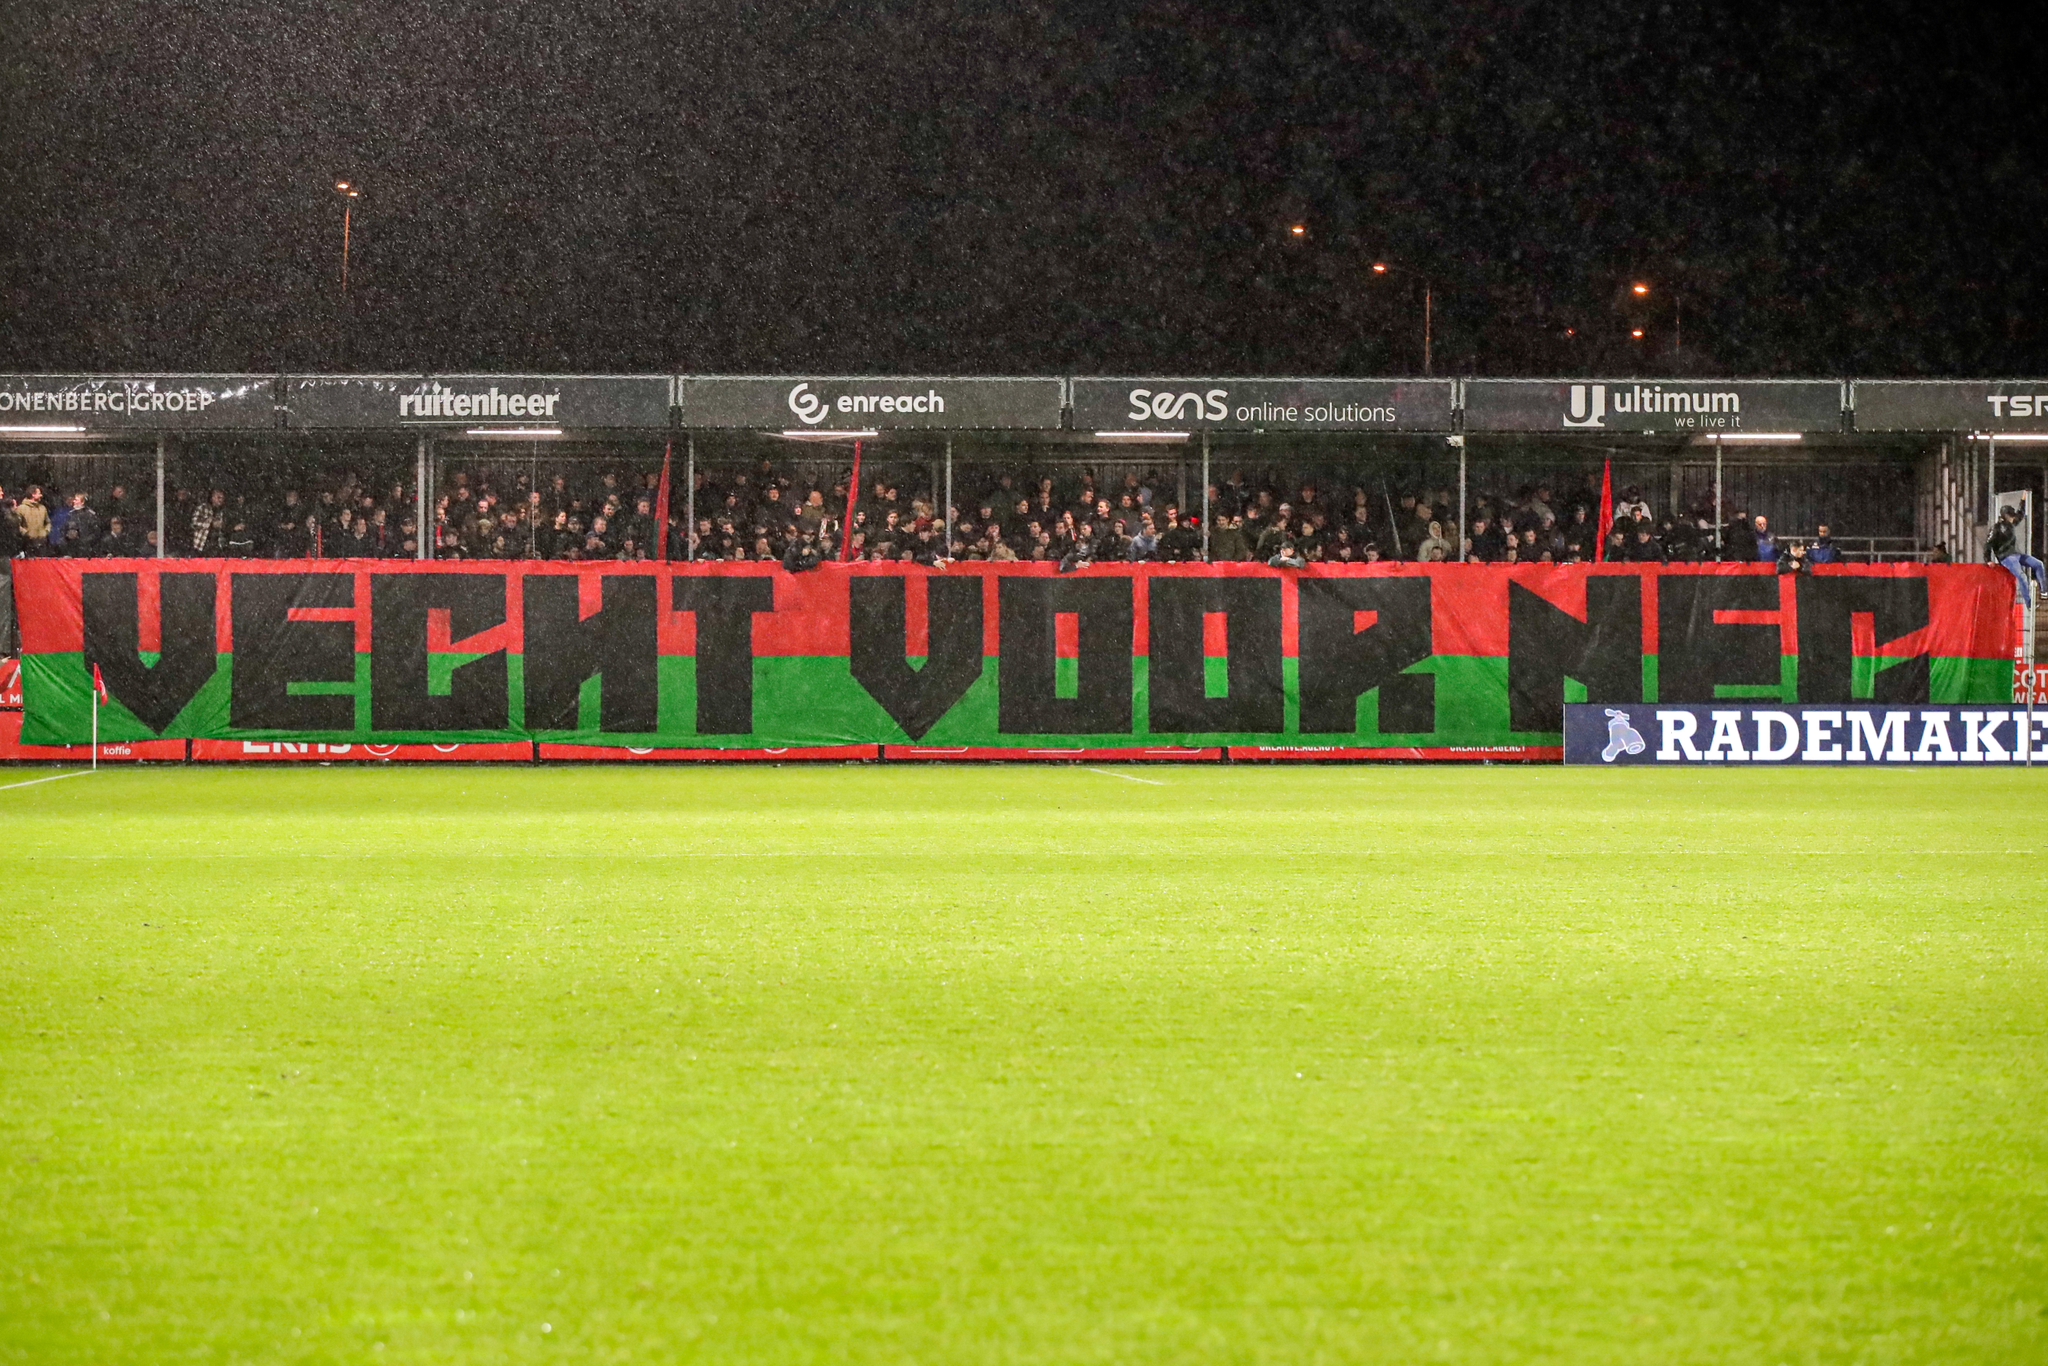 Ticketshop overladen door bezoekers; NEC-Vitesse uitverkocht